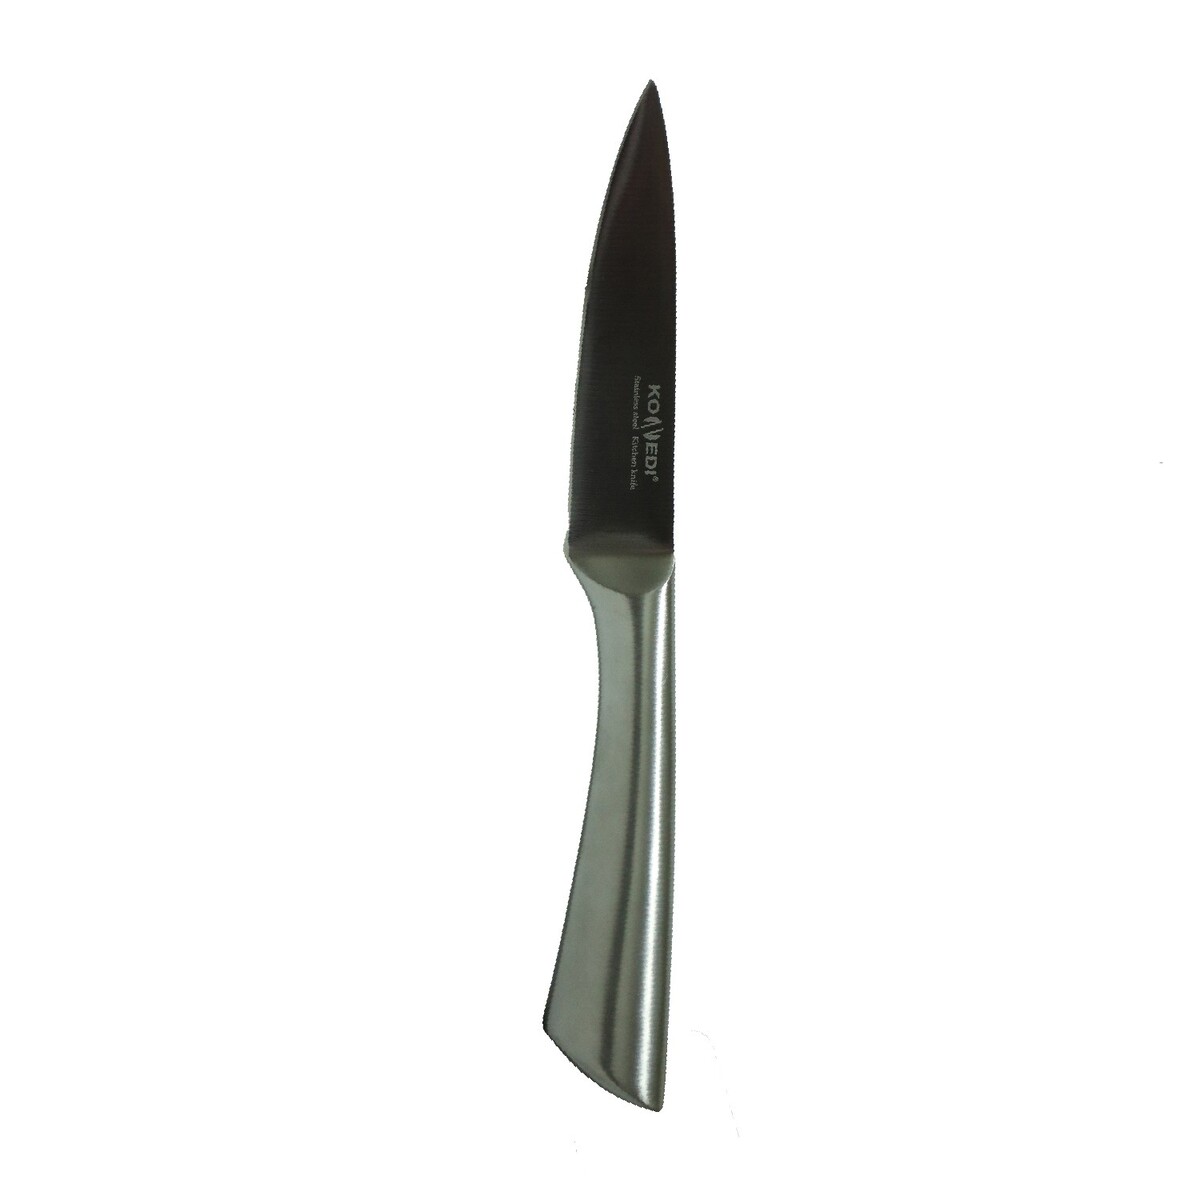 Home Knife K1-S109